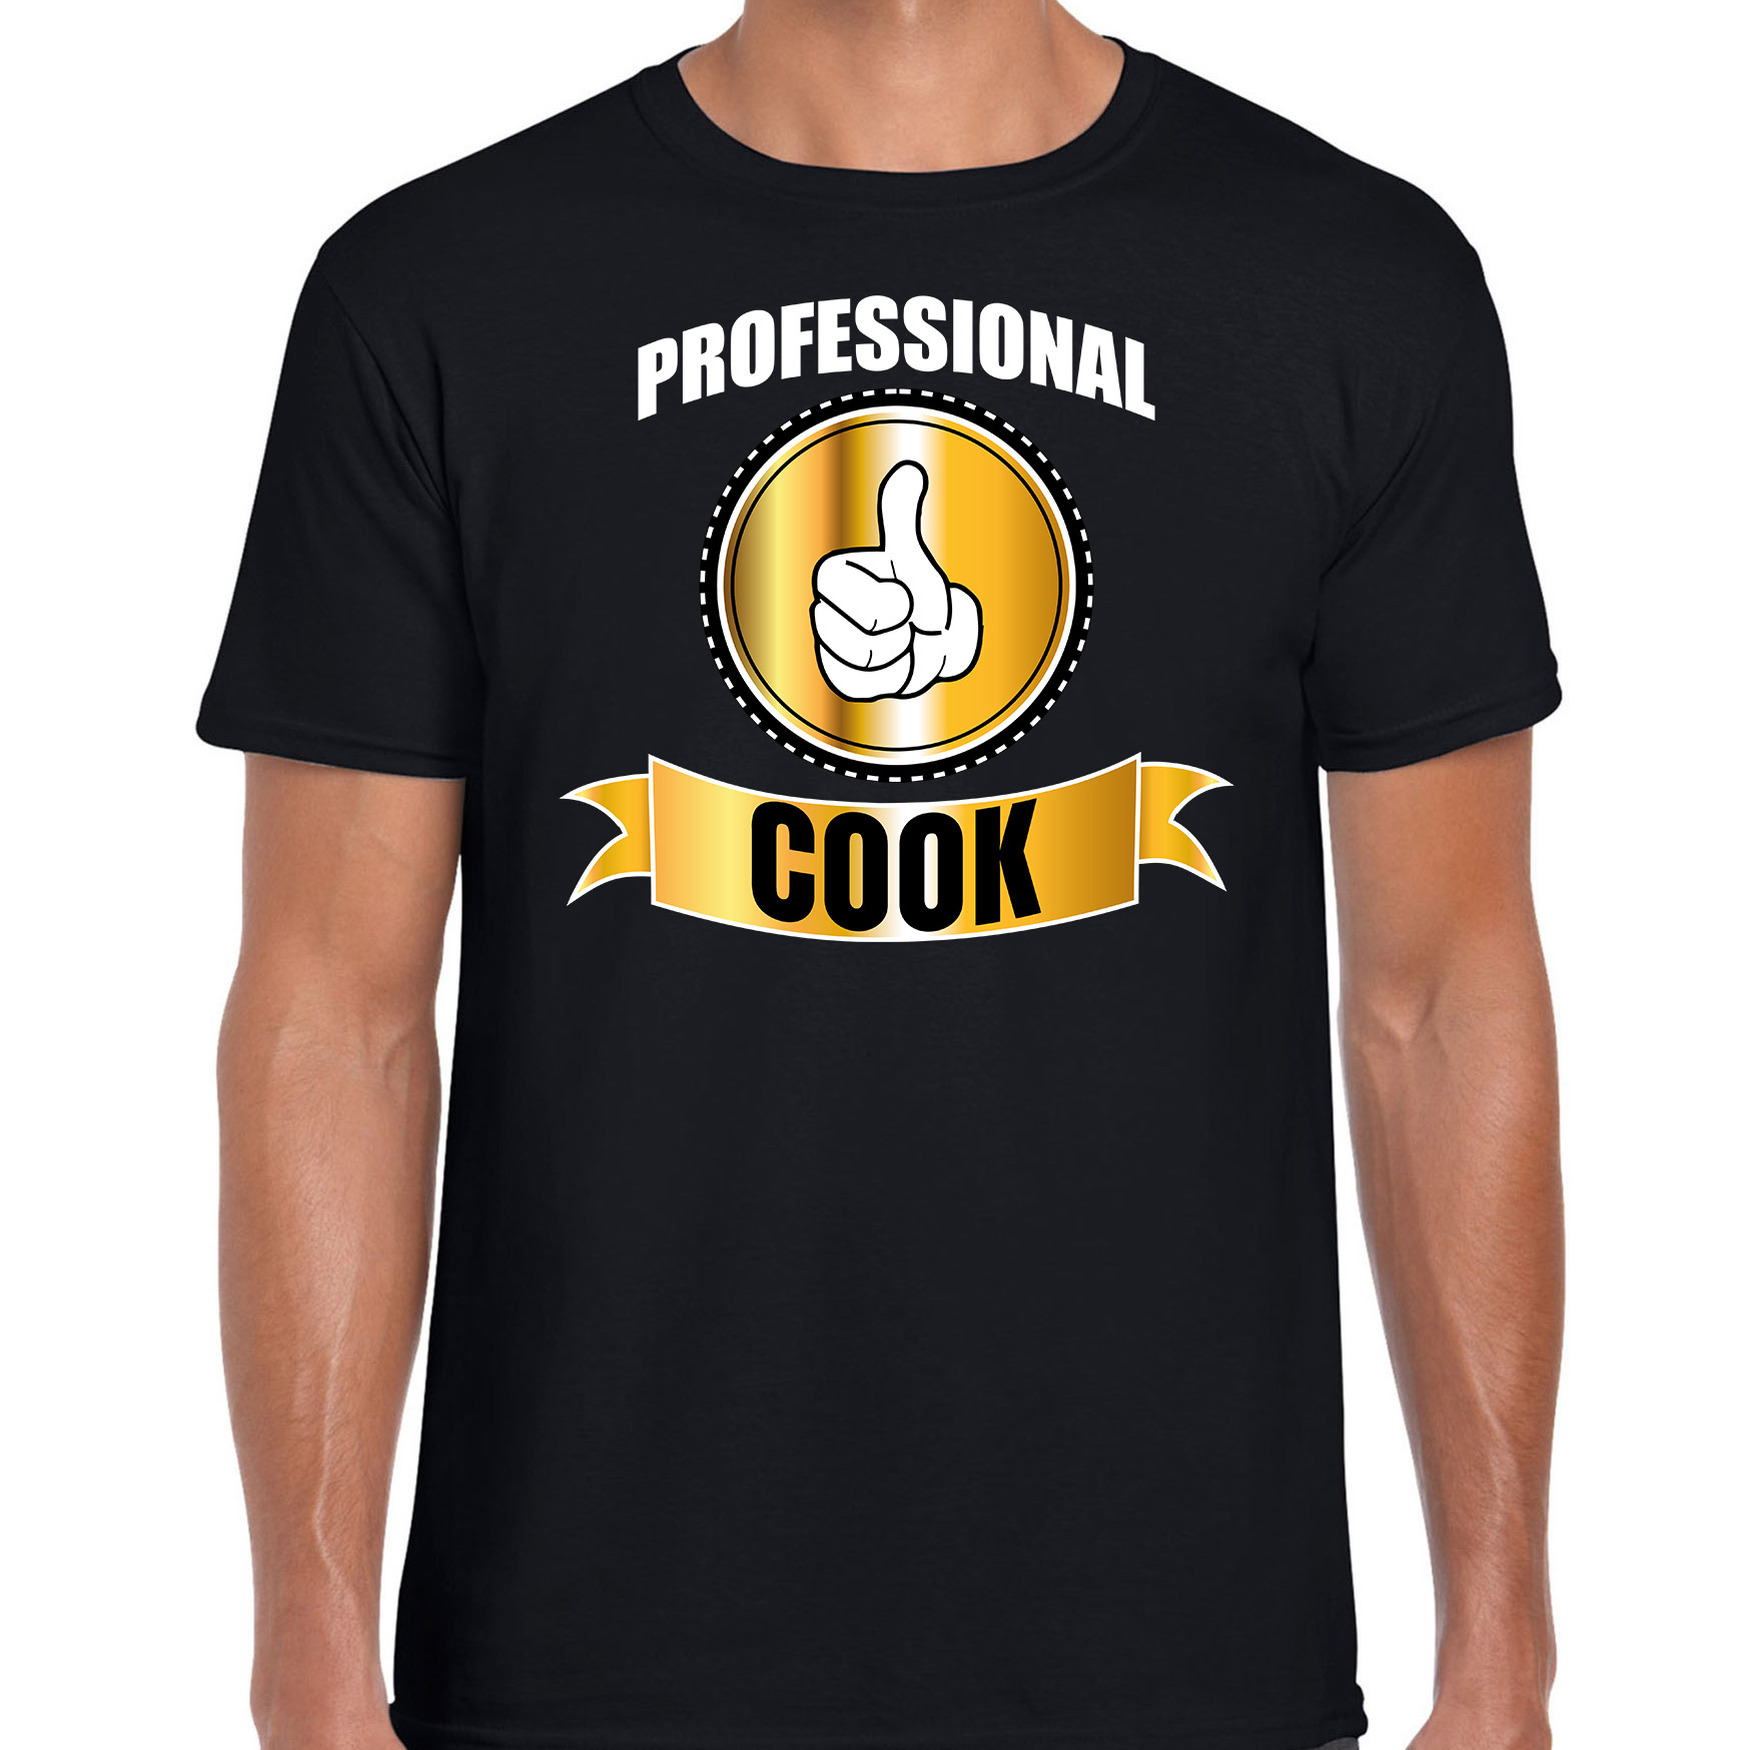 Professional cook-professionele kok t-shirt zwart heren Kok cadeau shirt